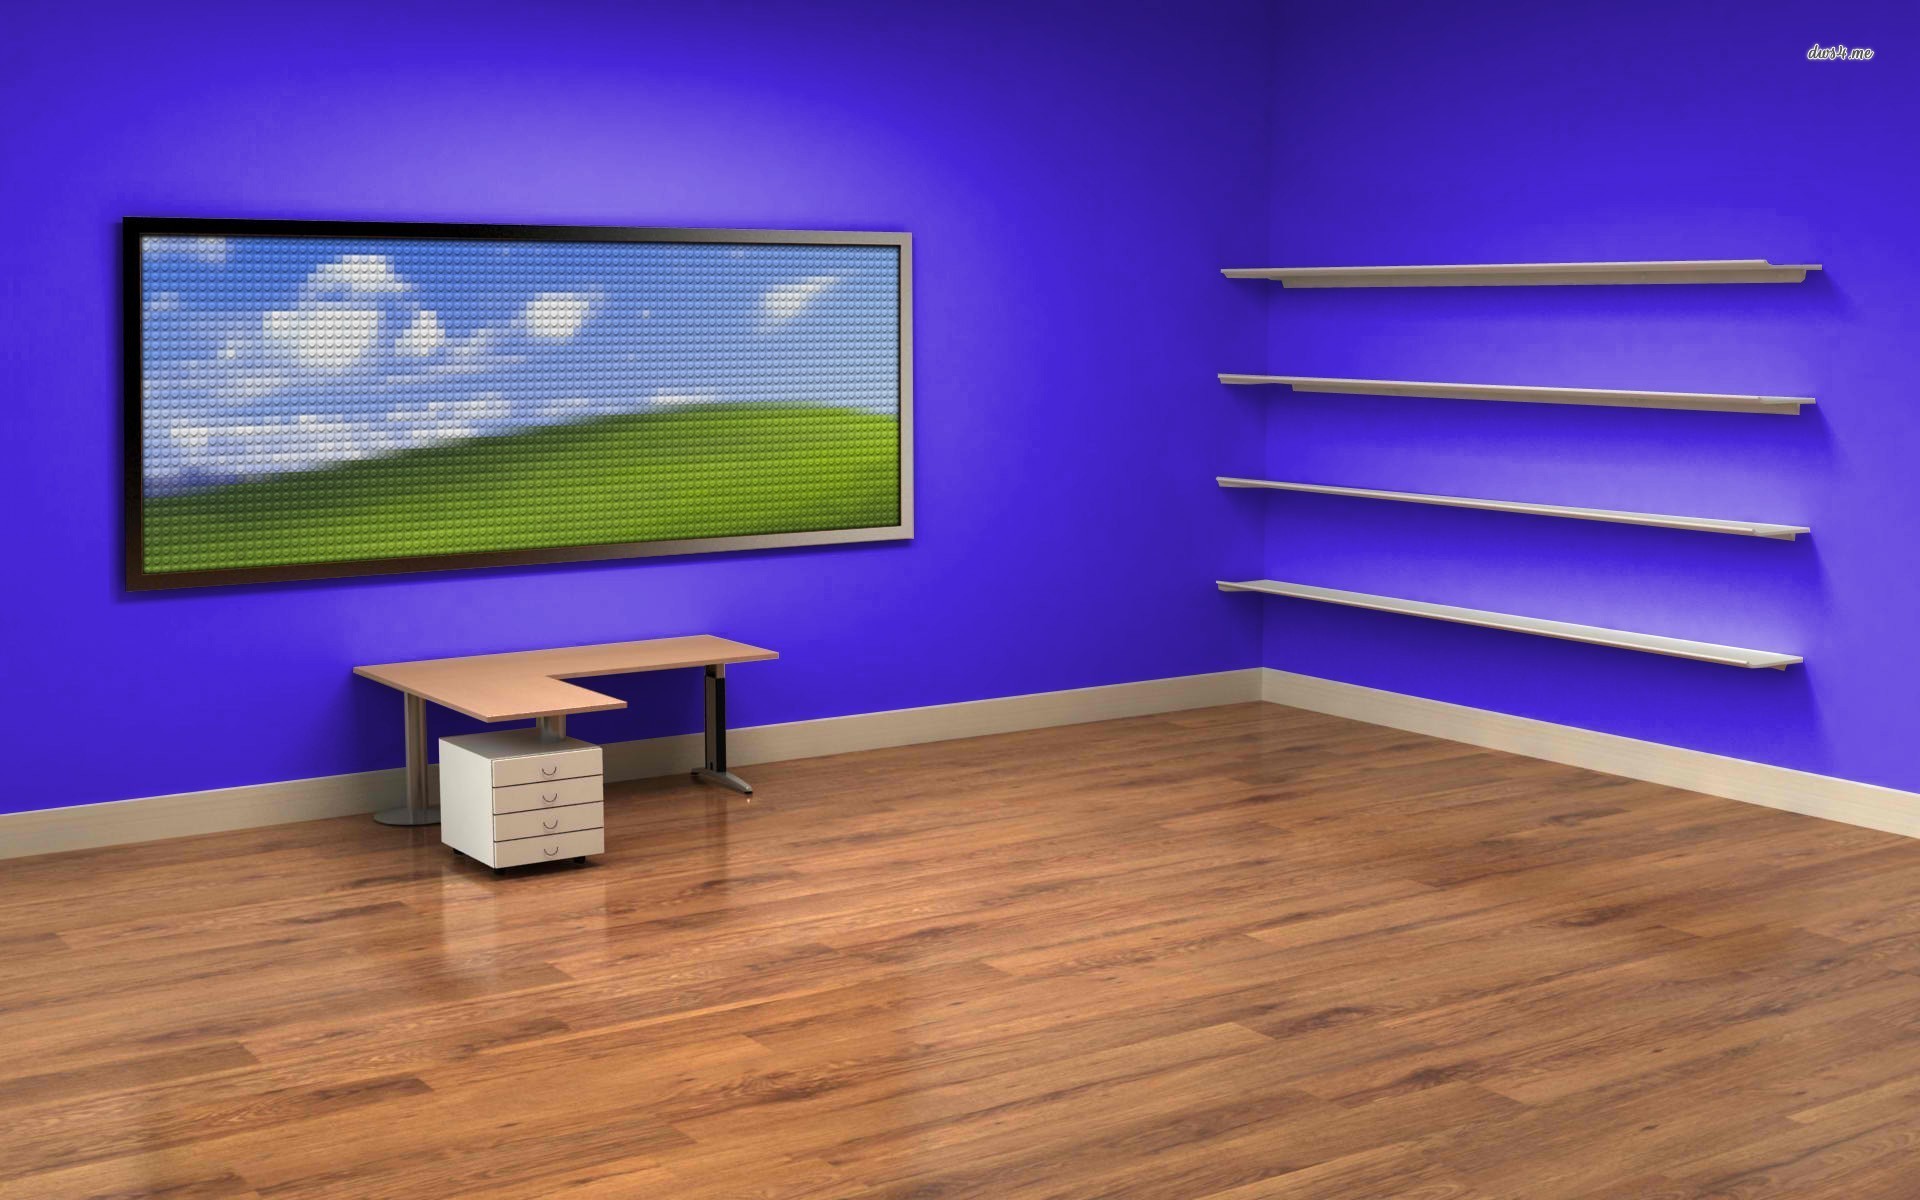 1920x1200 Desk and Shelves Desktop Wallpaper - WallpaperSafari